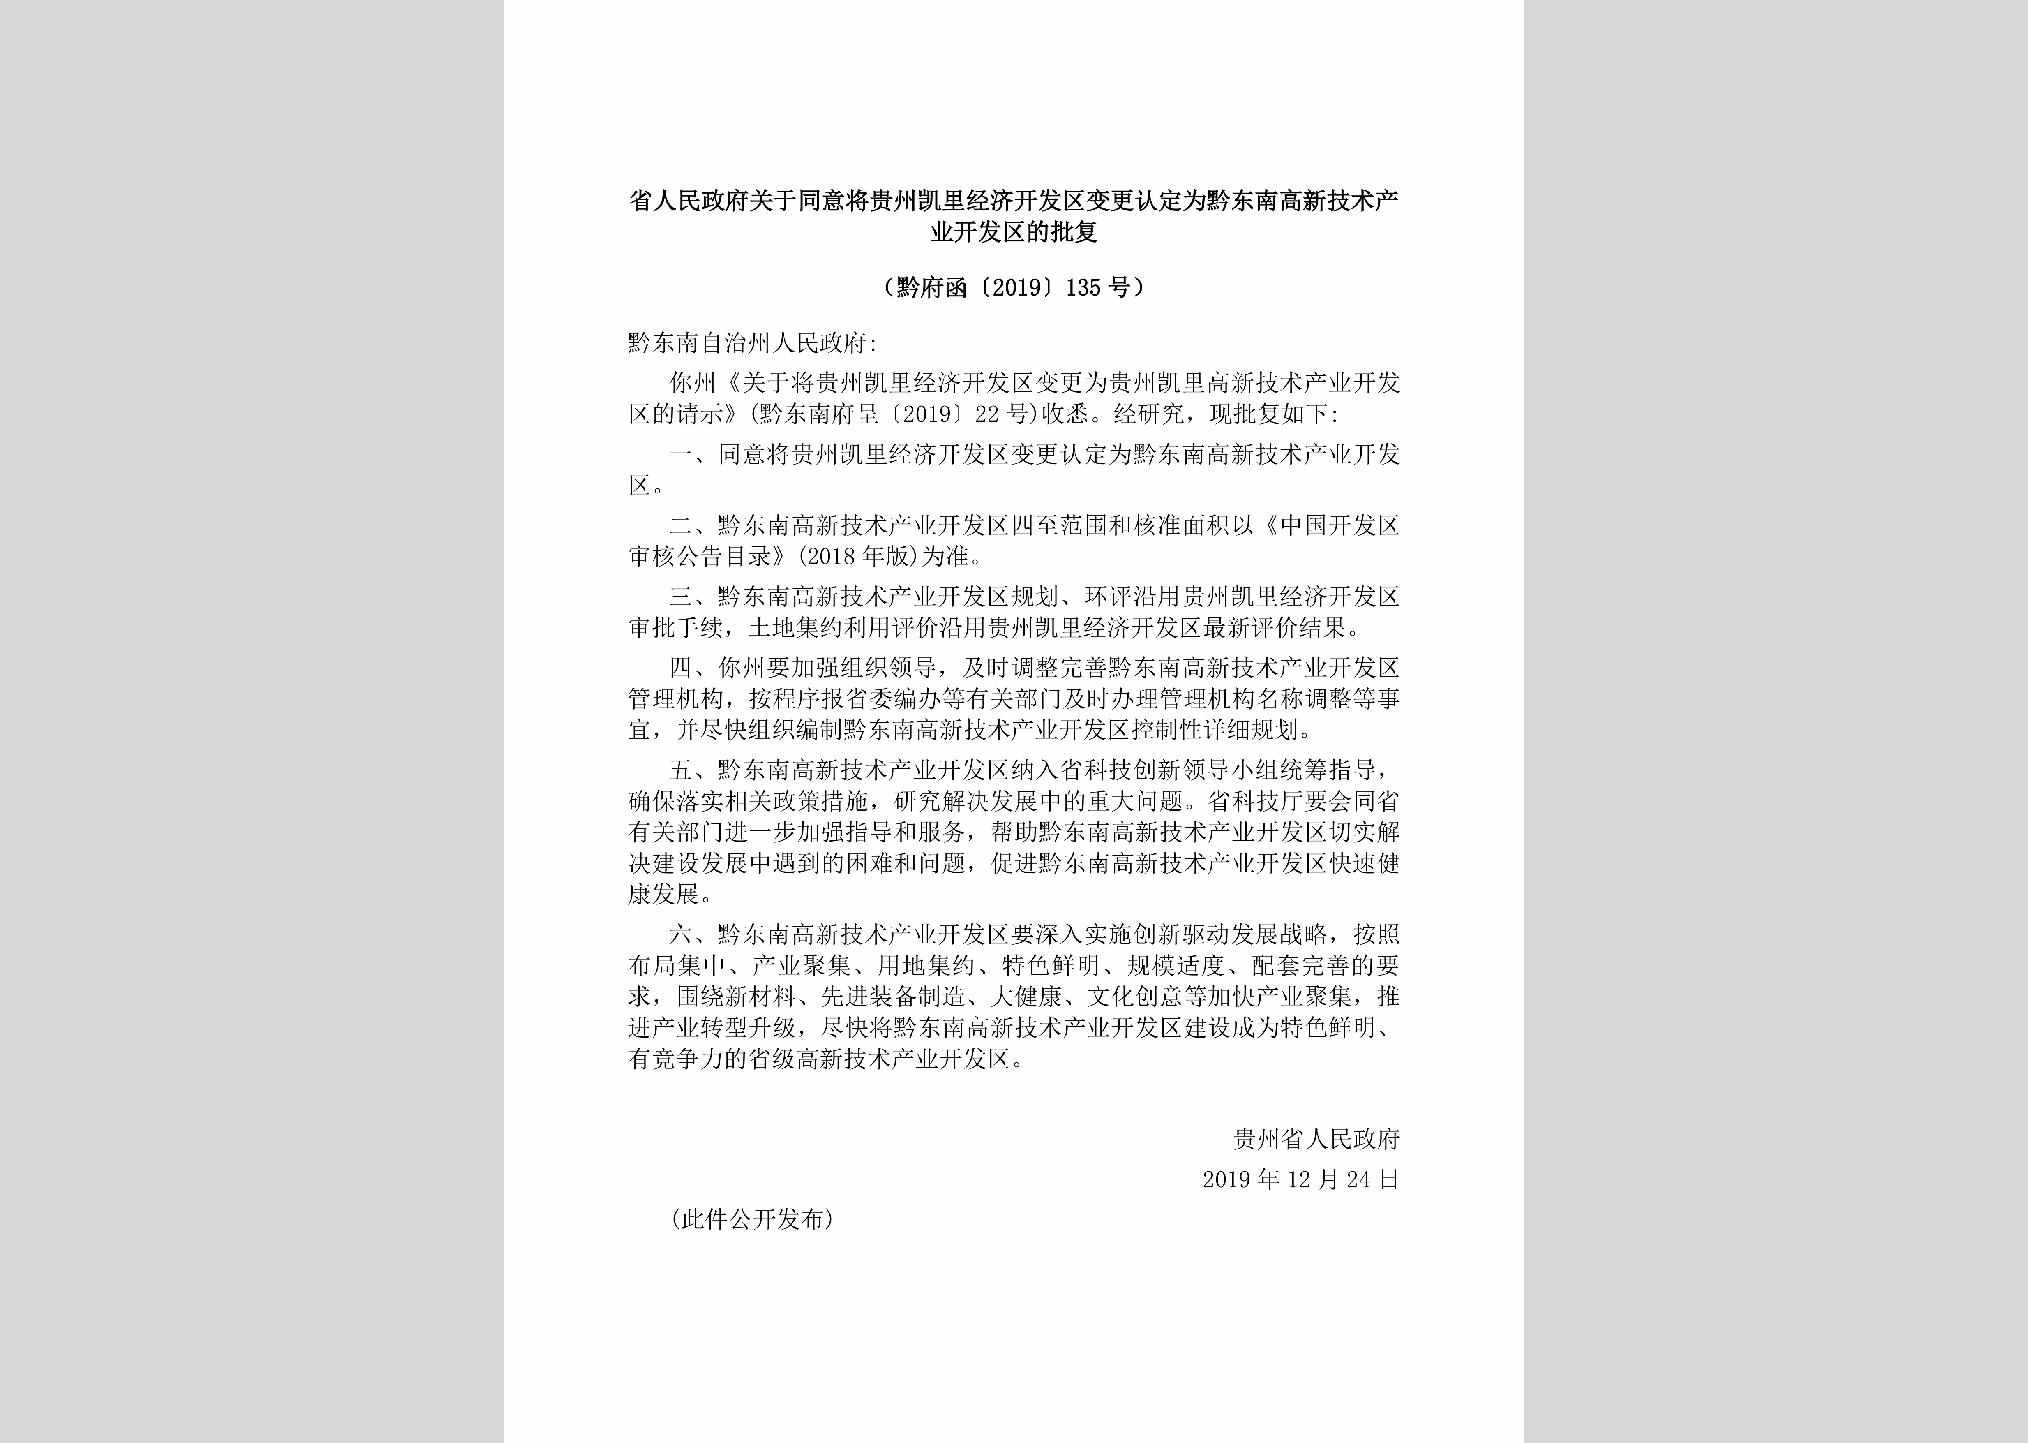 黔府函[2019]135号：省人民政府关于同意将贵州凯里经济开发区变更认定为黔东南高新技术产业开发区的批复